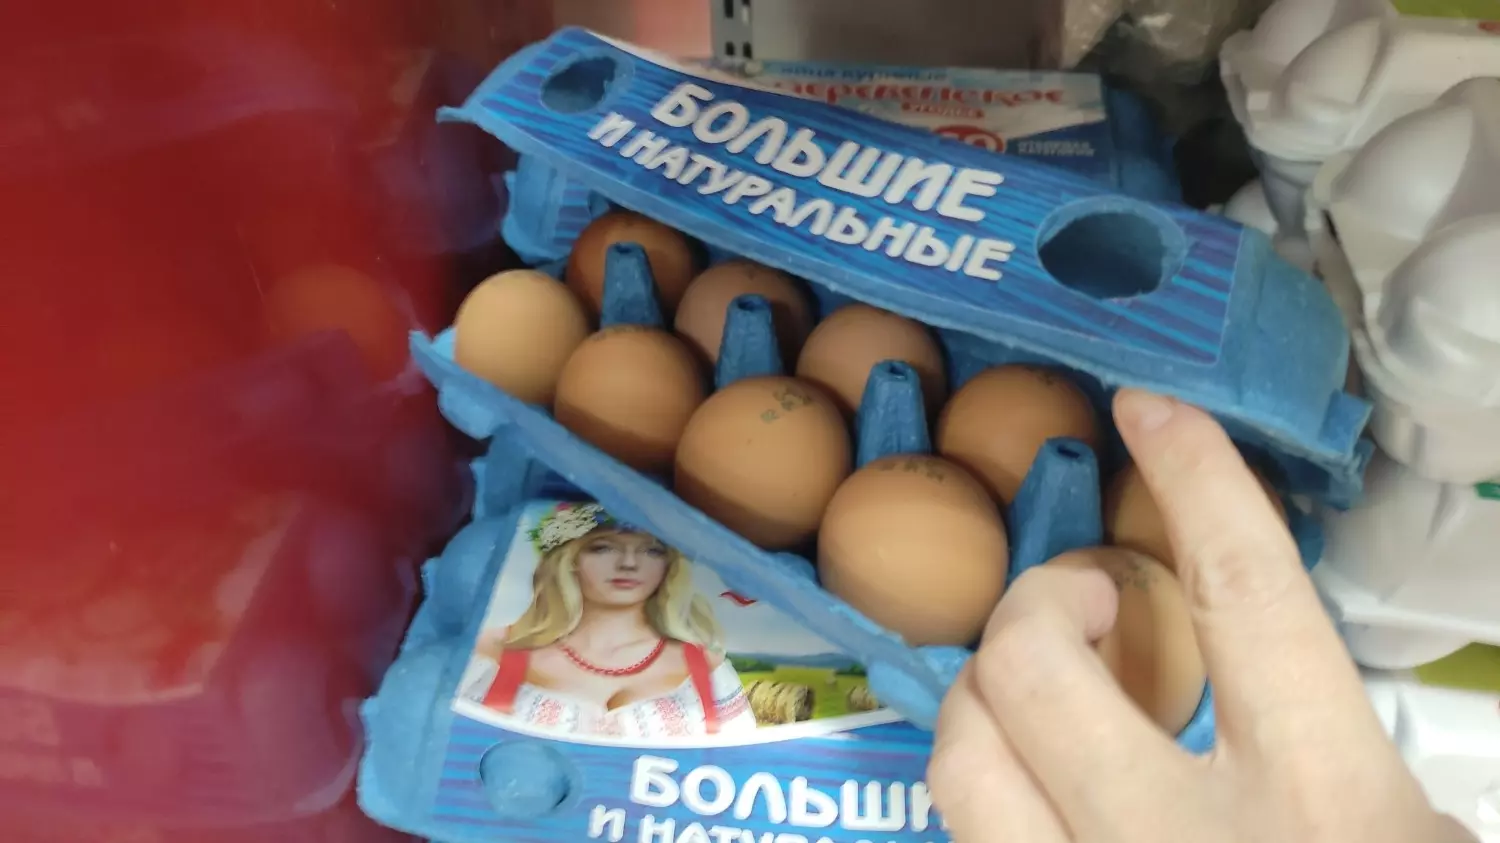 Десяток отборных яиц из Белгородской области.